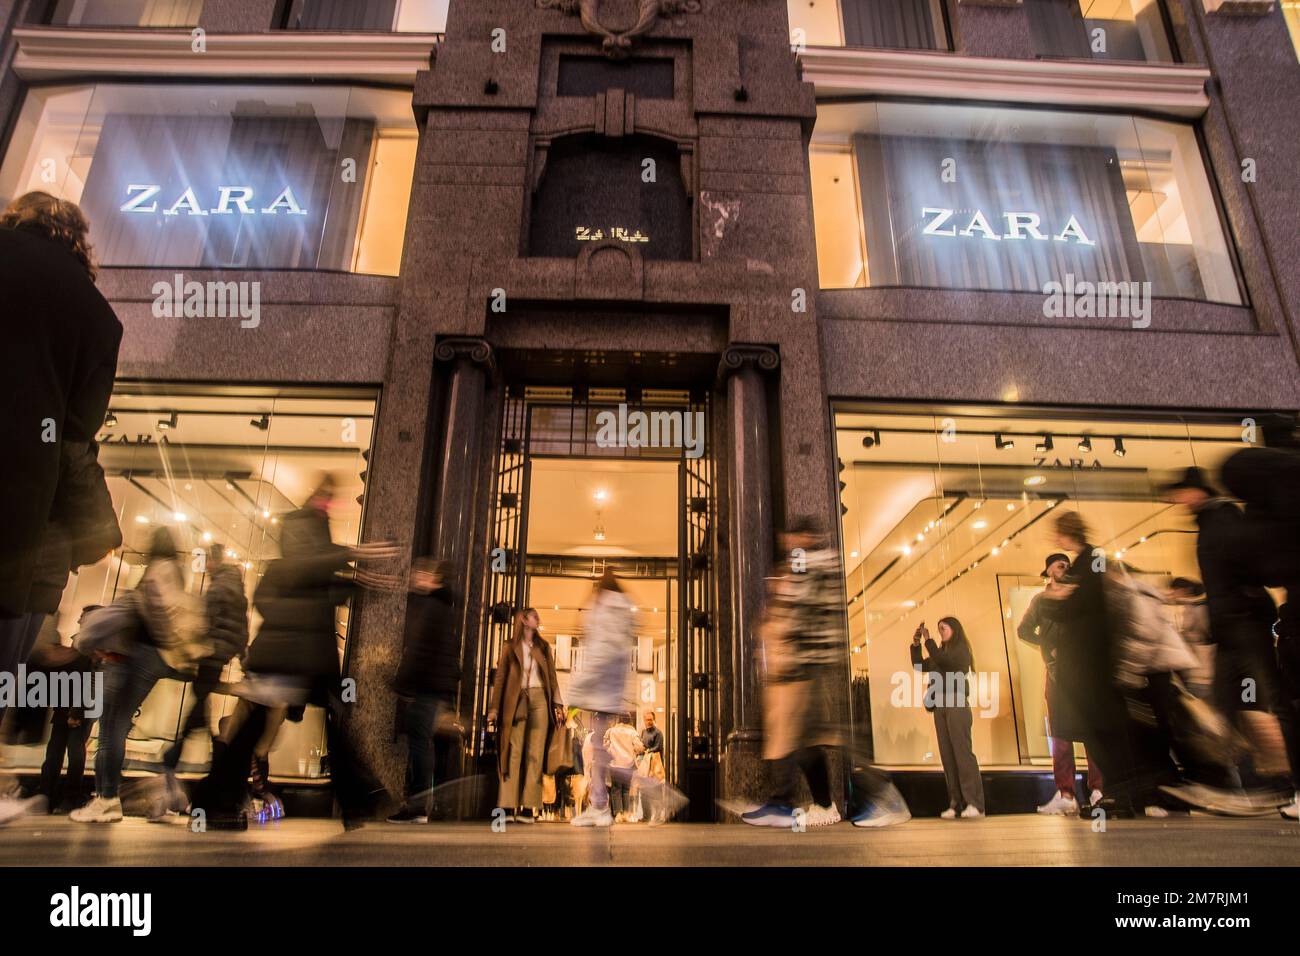 Zara, le magasin Inditex par excellence, fait constamment les gros titres.  Il y a tout juste un mois, elle a ouvert son magasin phare au milieu de la  Calle Juan de Austria,